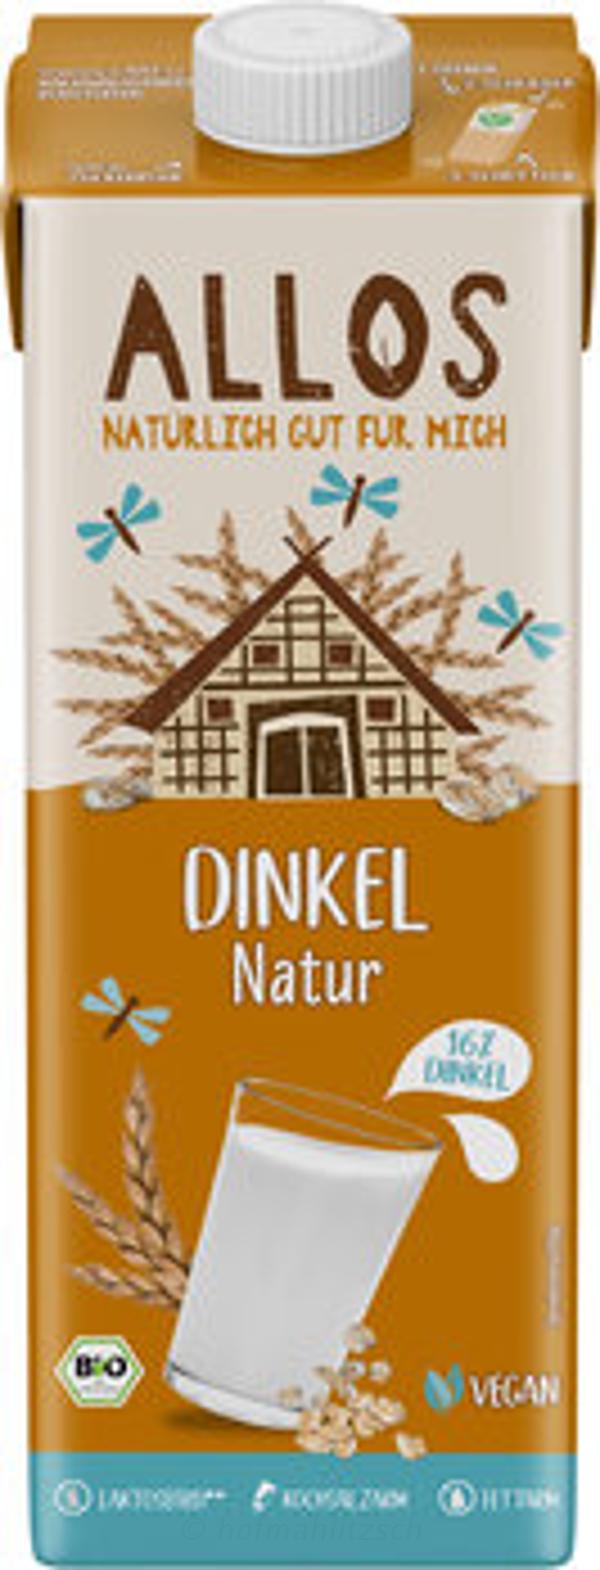 Produktfoto zu Dinkel-Drink Naturell